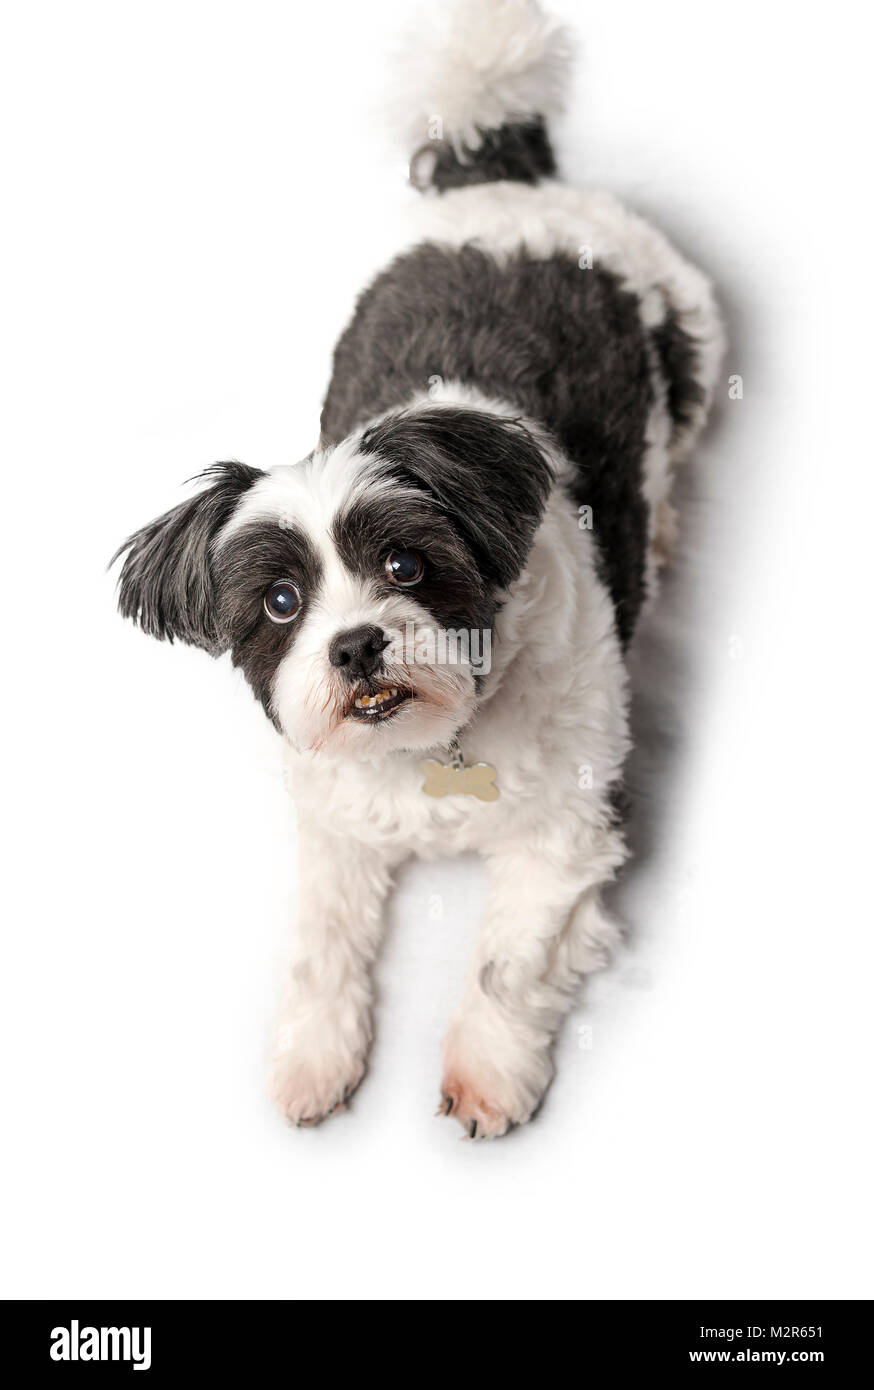 Niedlich, süß und verschmust schwarzer oder grauer und weißer Lhasa Apso Hund isoliert auf ein reines weißes studio Hintergrund Stockfoto